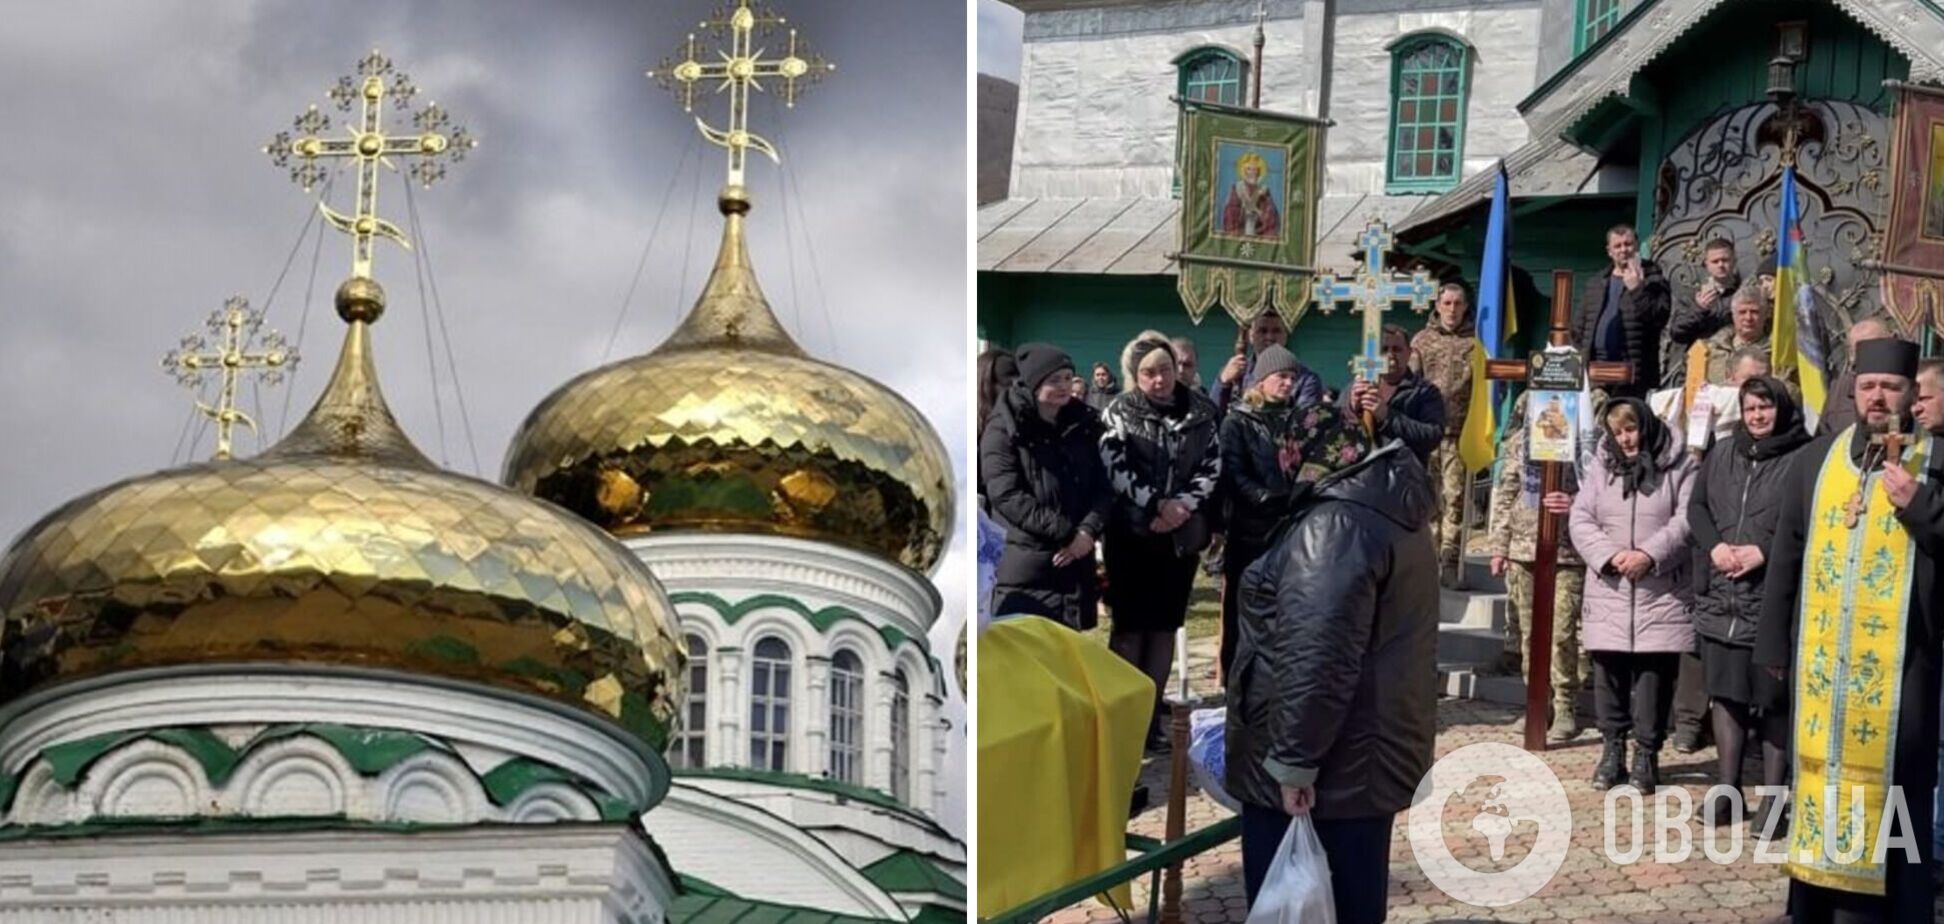 'Сердце сжимается от боли': на Буковине священник УПЦ МП не впустил семью с телом погибшего защитника Украины в церковь